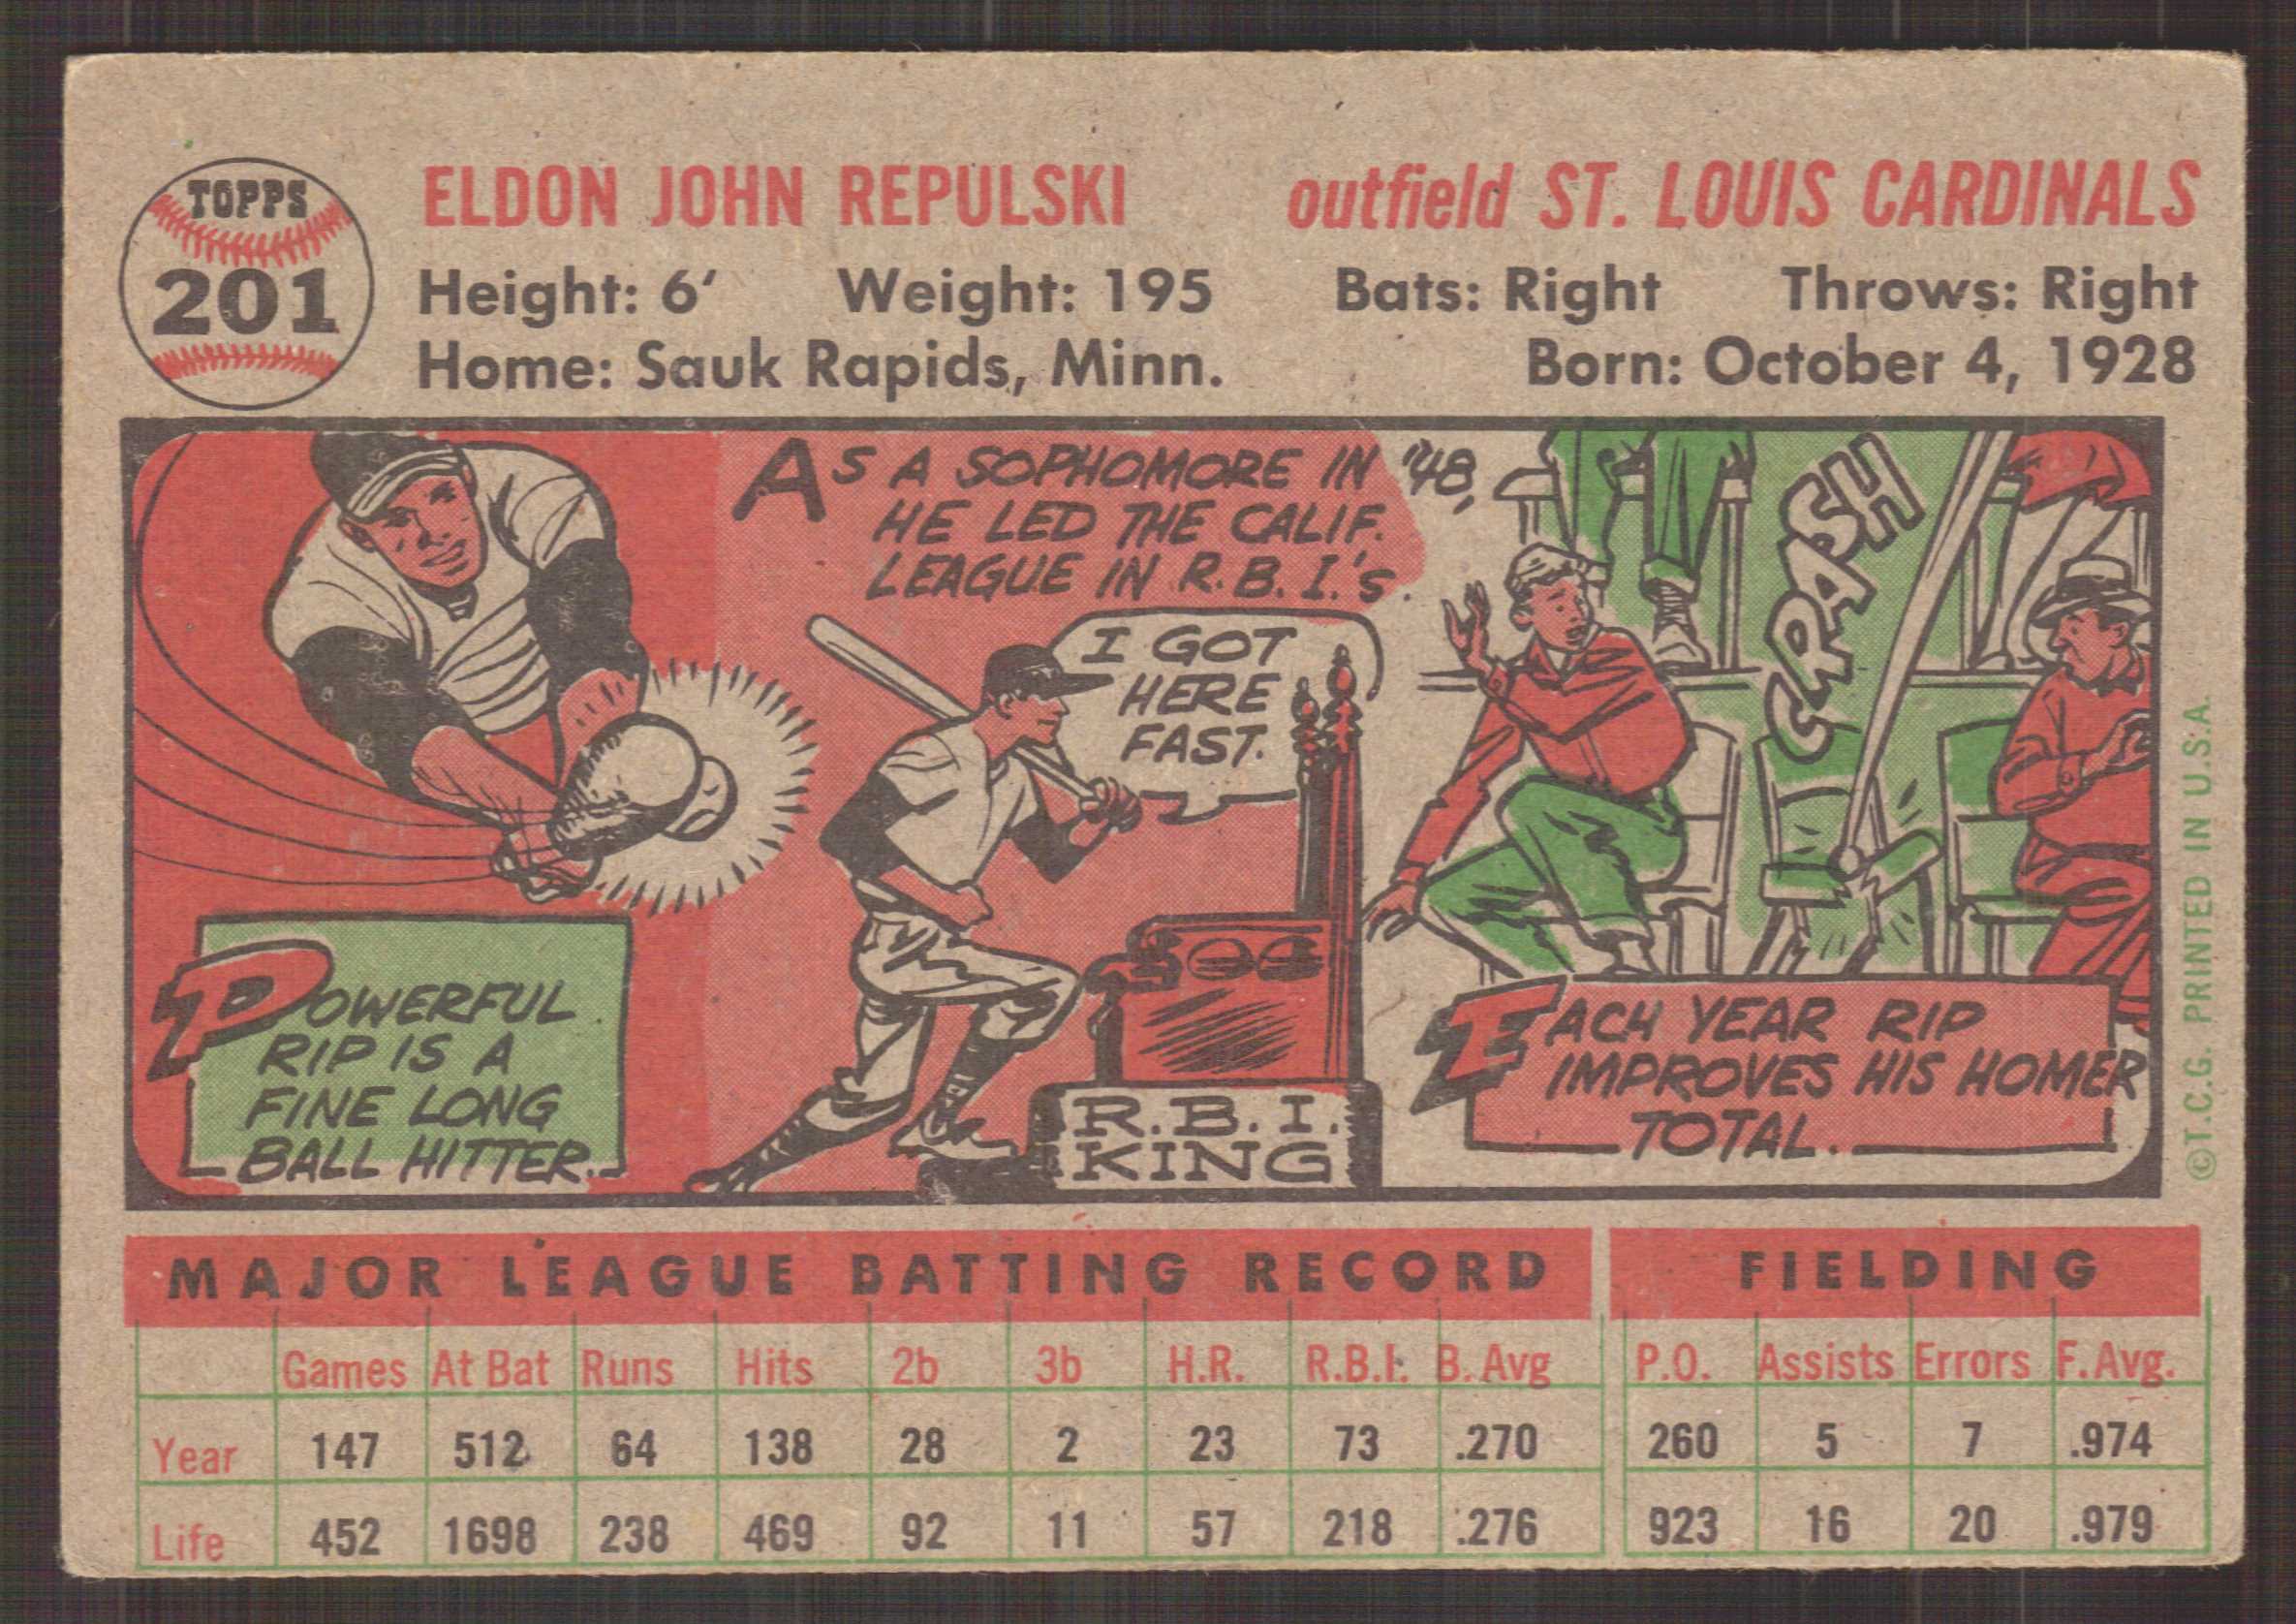 1956 Topps #201 Rip Repulski back image